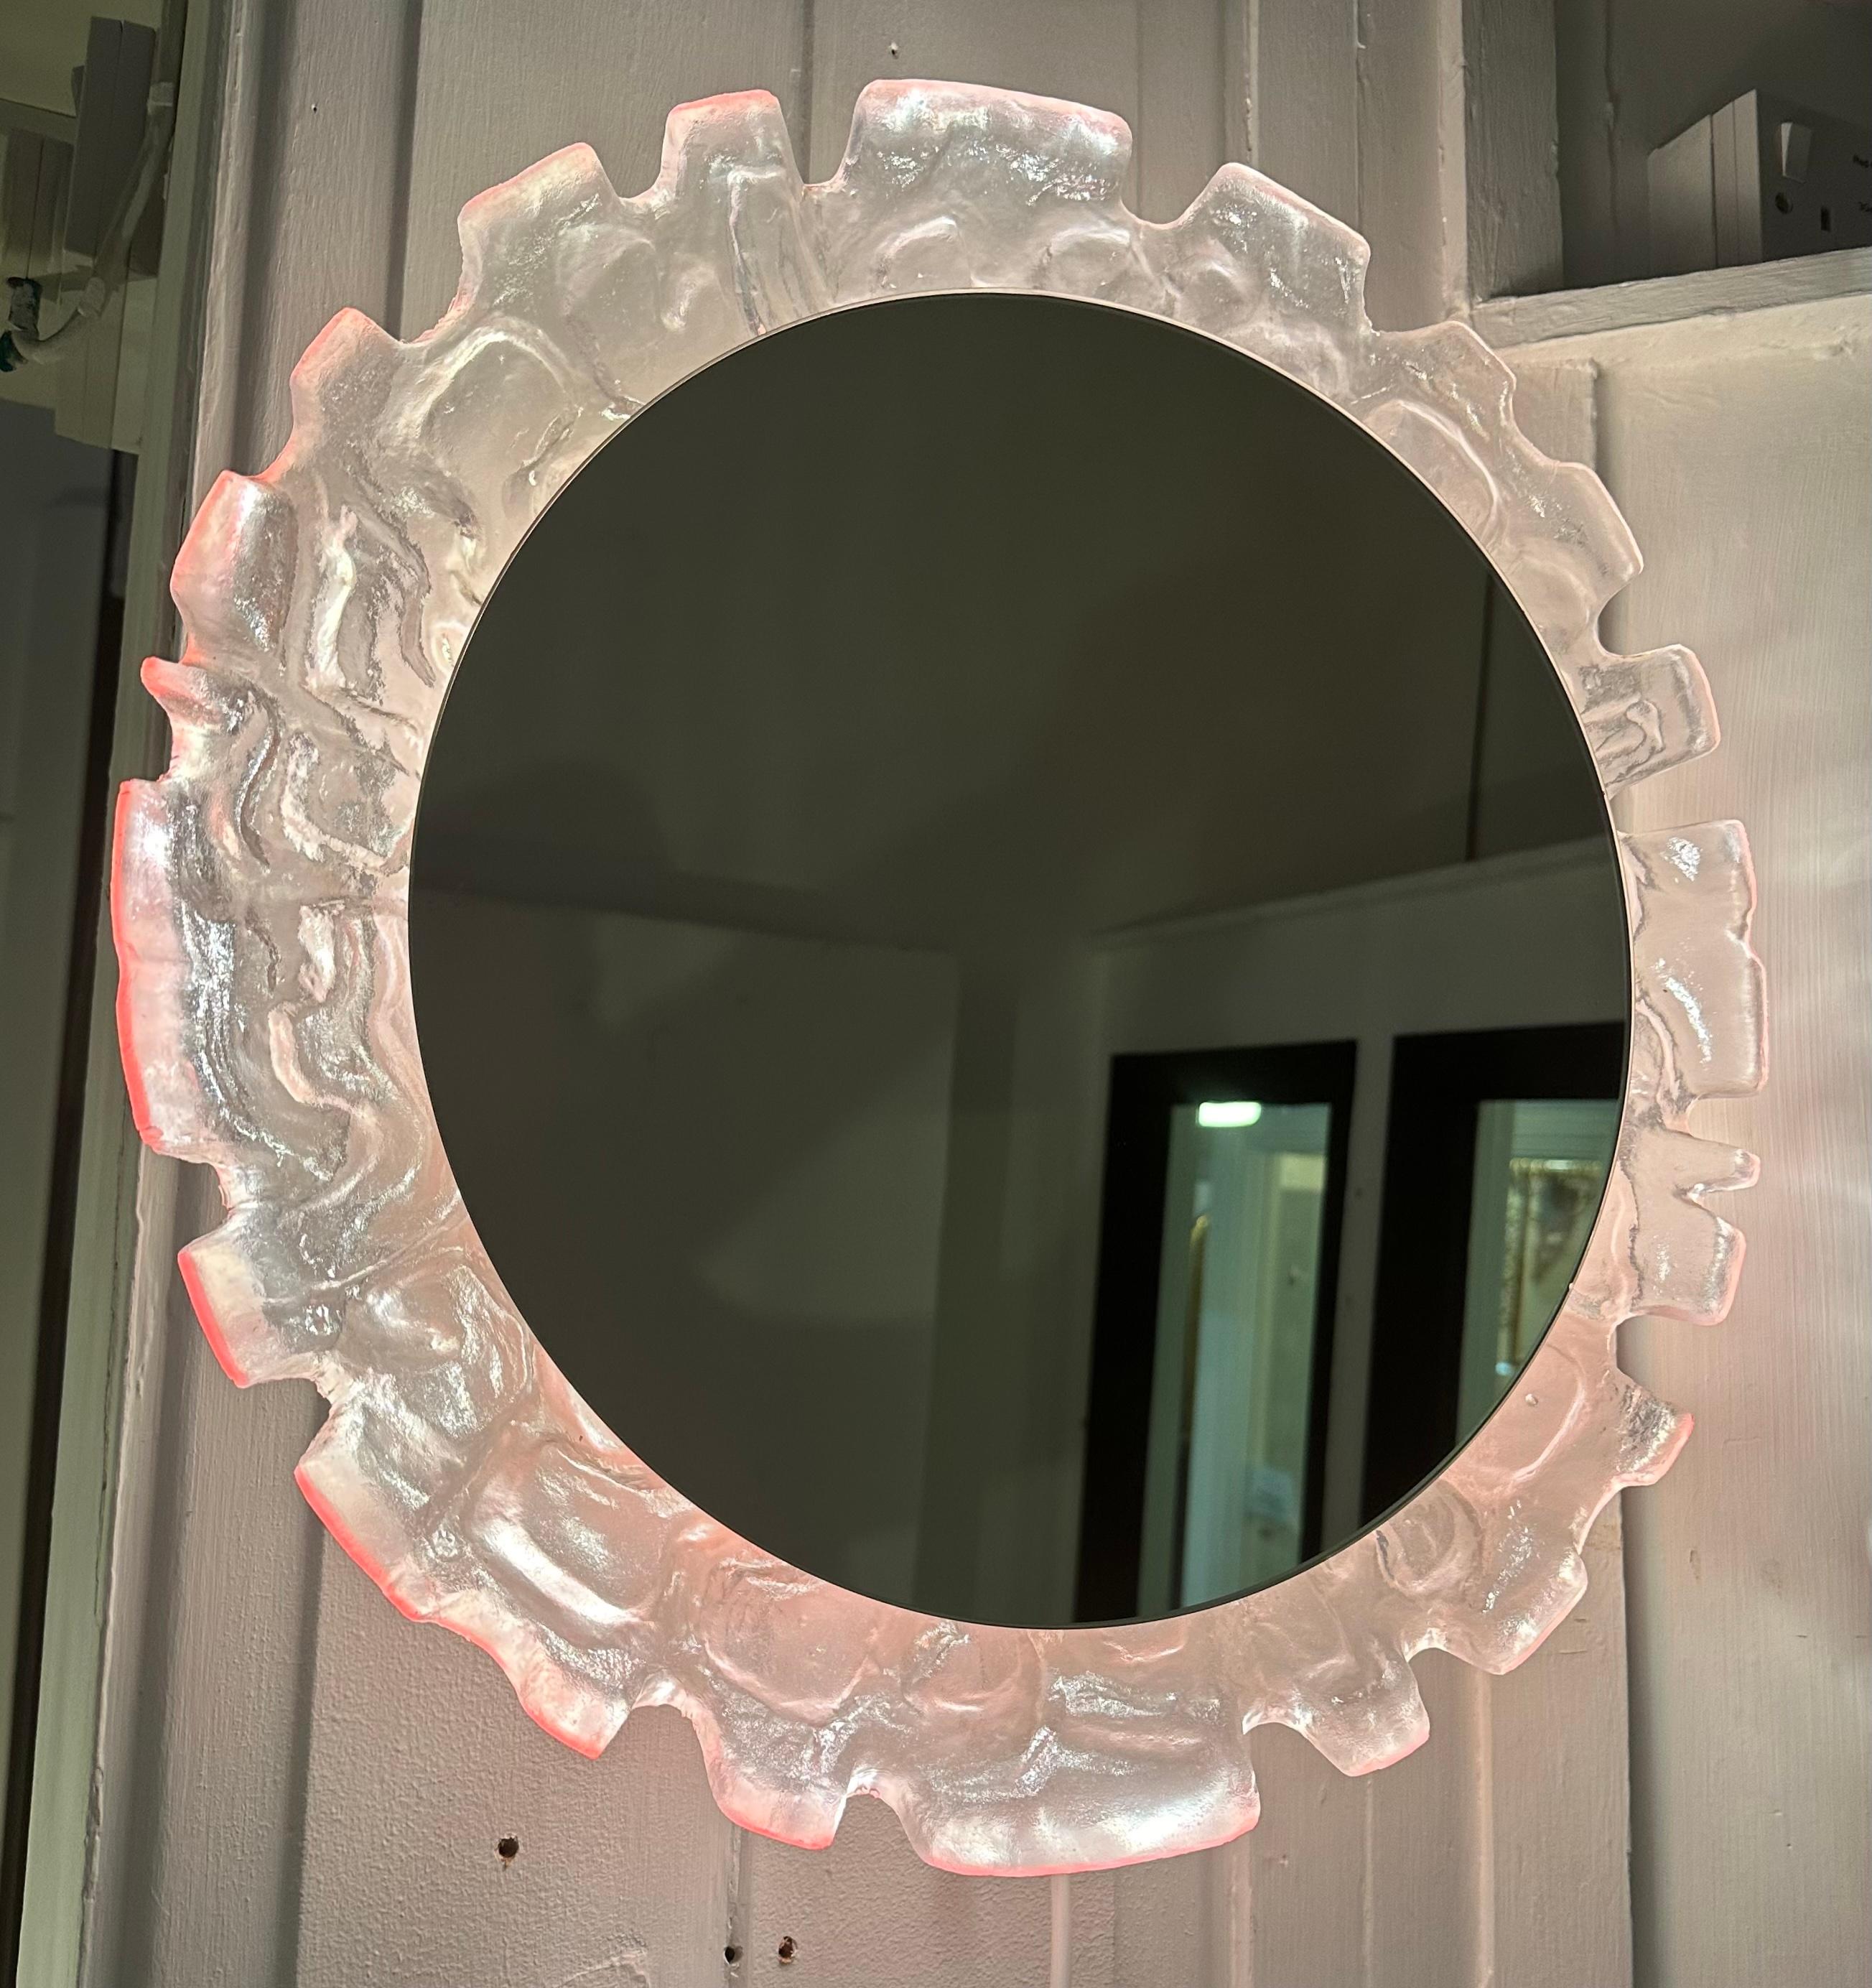 1960er Jahre Vintage Deutsch beleuchtete Lucite verspiegelte Glaswand Spiegel hergestellt von Erco.  Der runde Spiegel hängt in einem ungewöhnlichen, abstrakt geformten und strukturierten Rahmen aus geformtem Lucit, der hinterleuchtet ist.  

Es